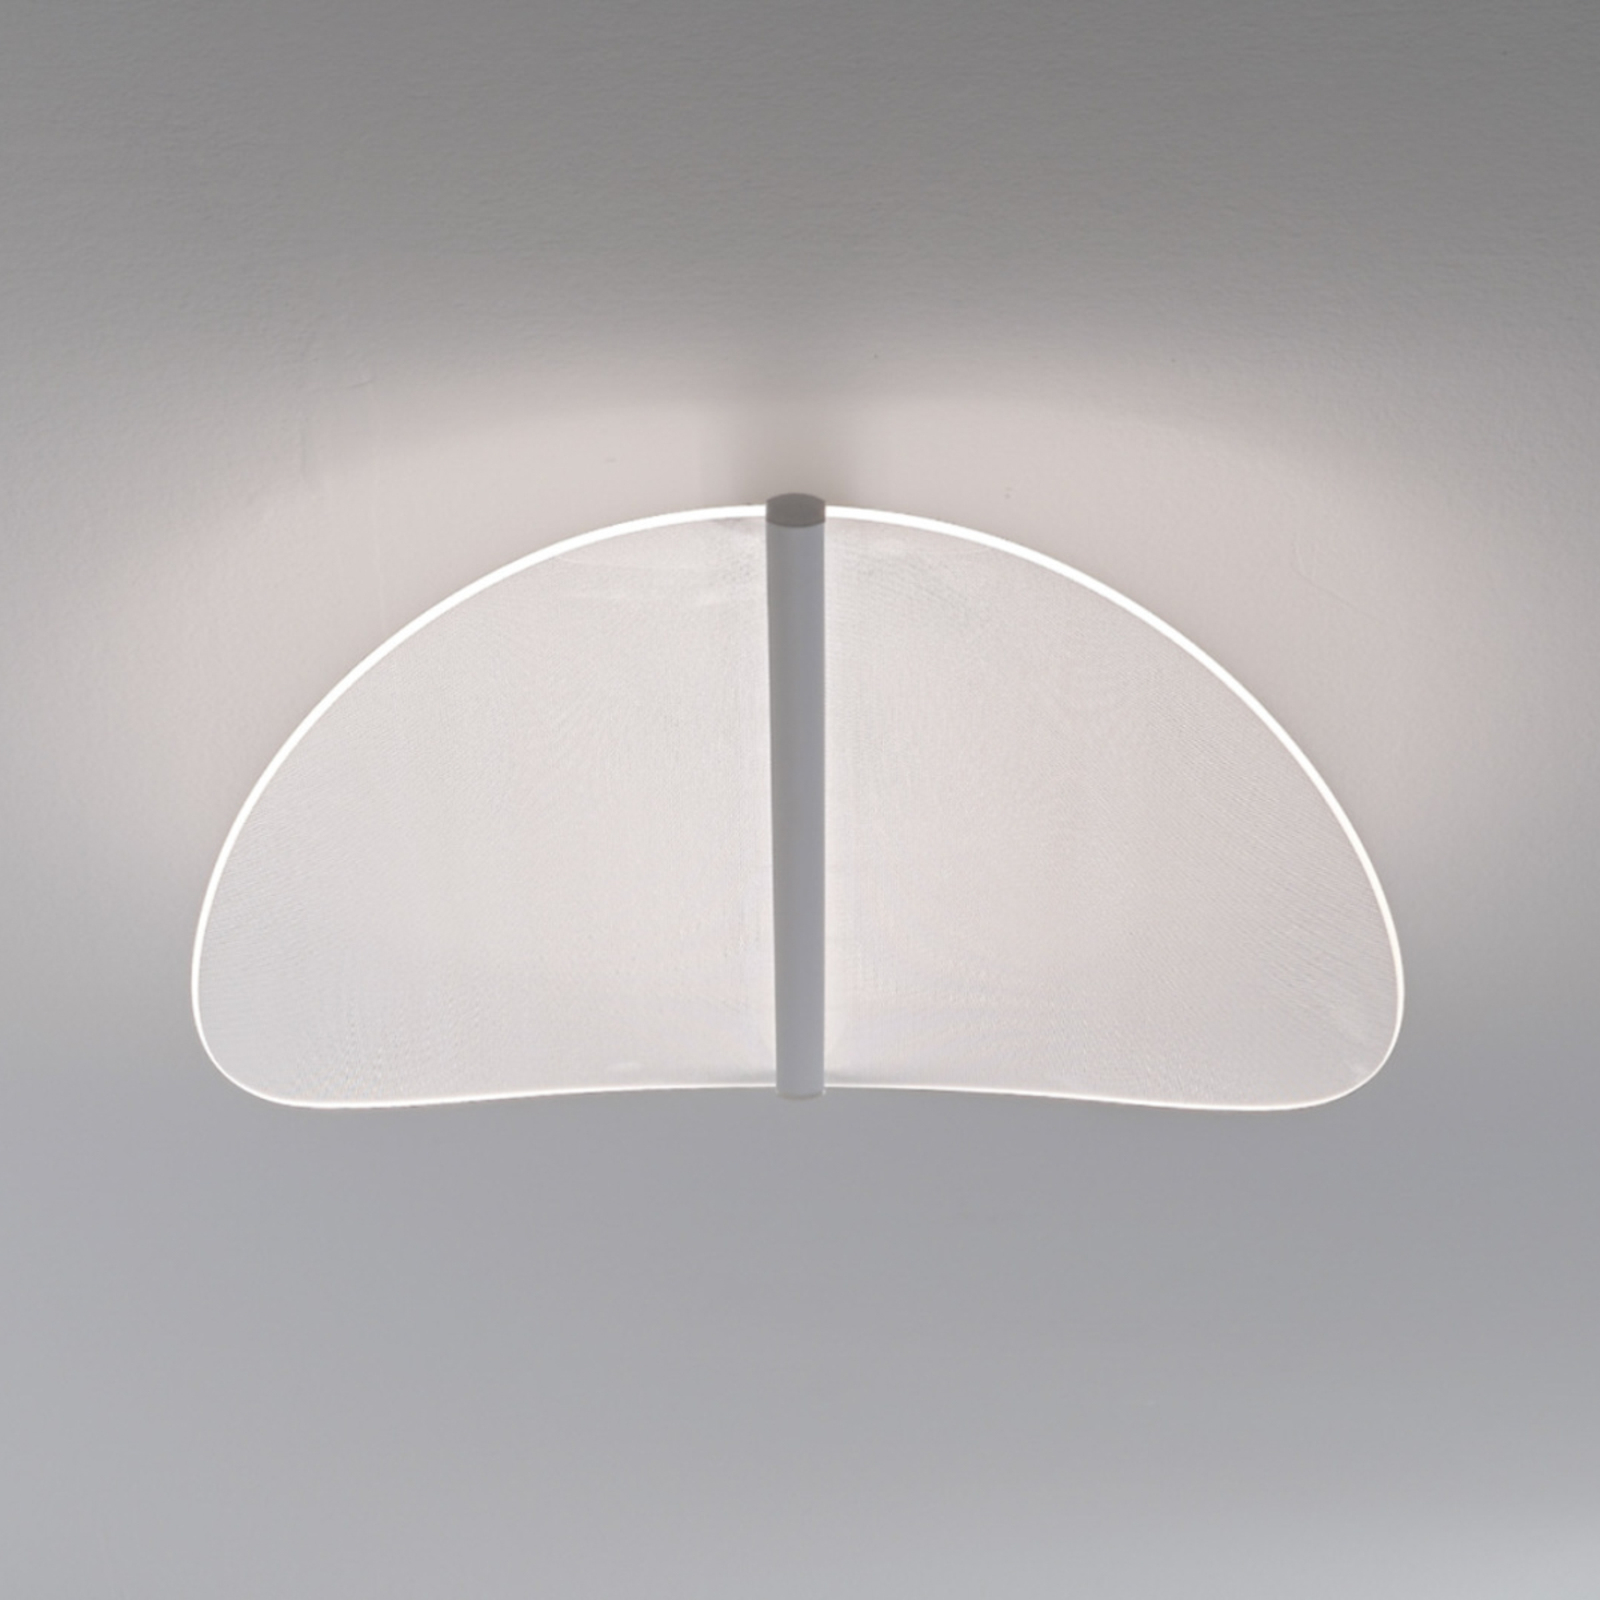 Stilnovo Diphy LED ceiling light, phase, 76 cm